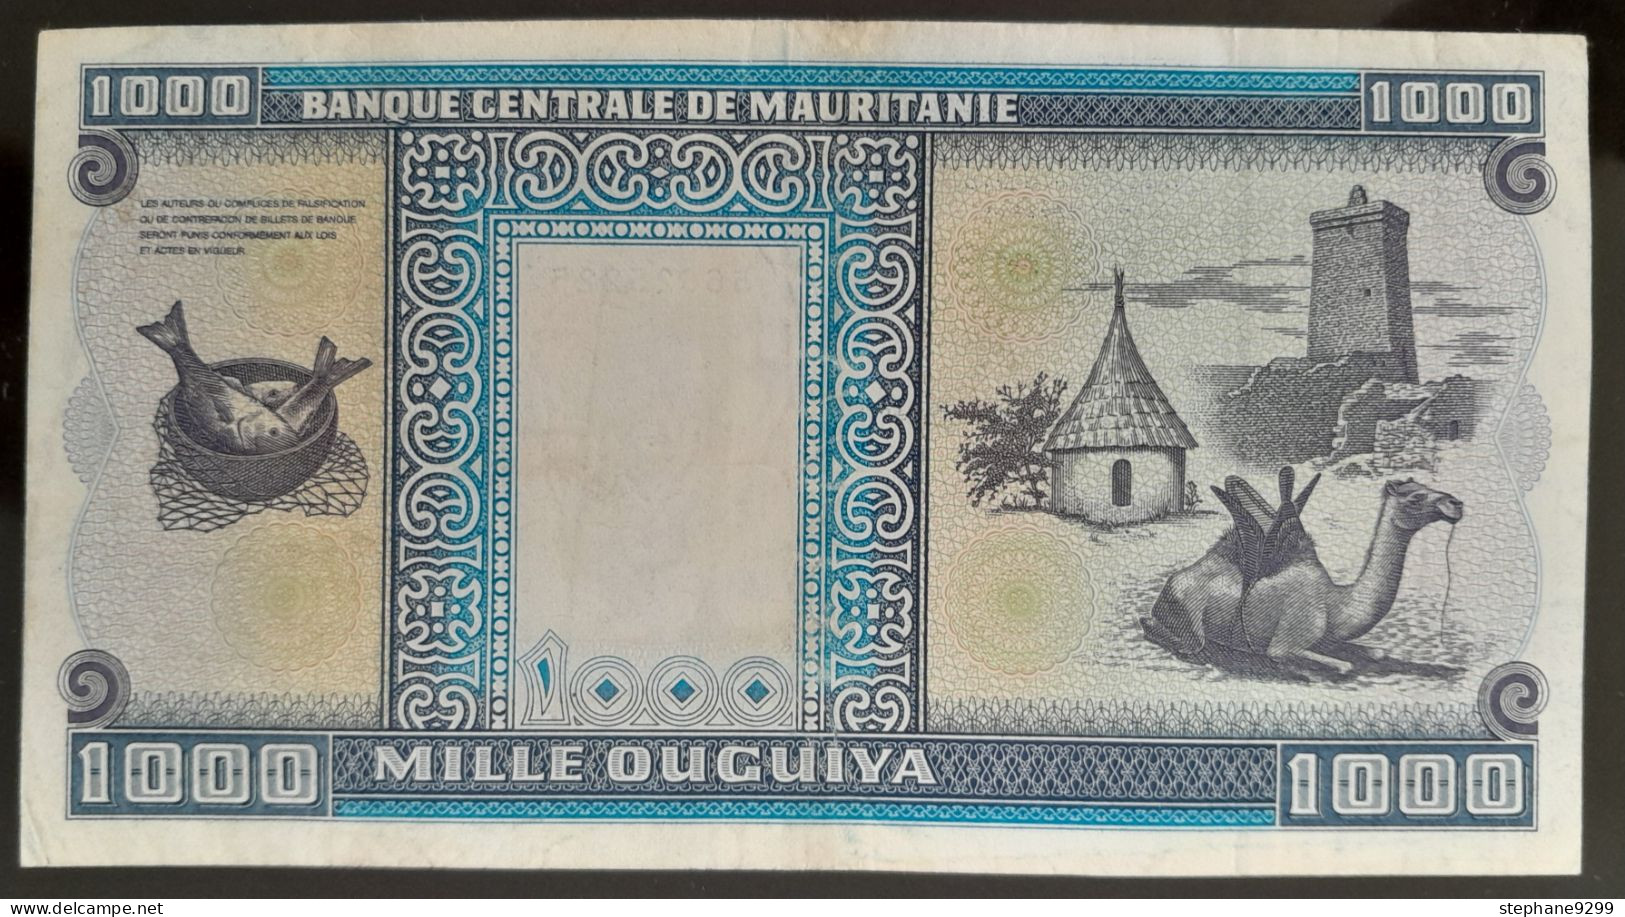 MAURITANIE 1000 OUGUIYA 1993 - Mauritanien